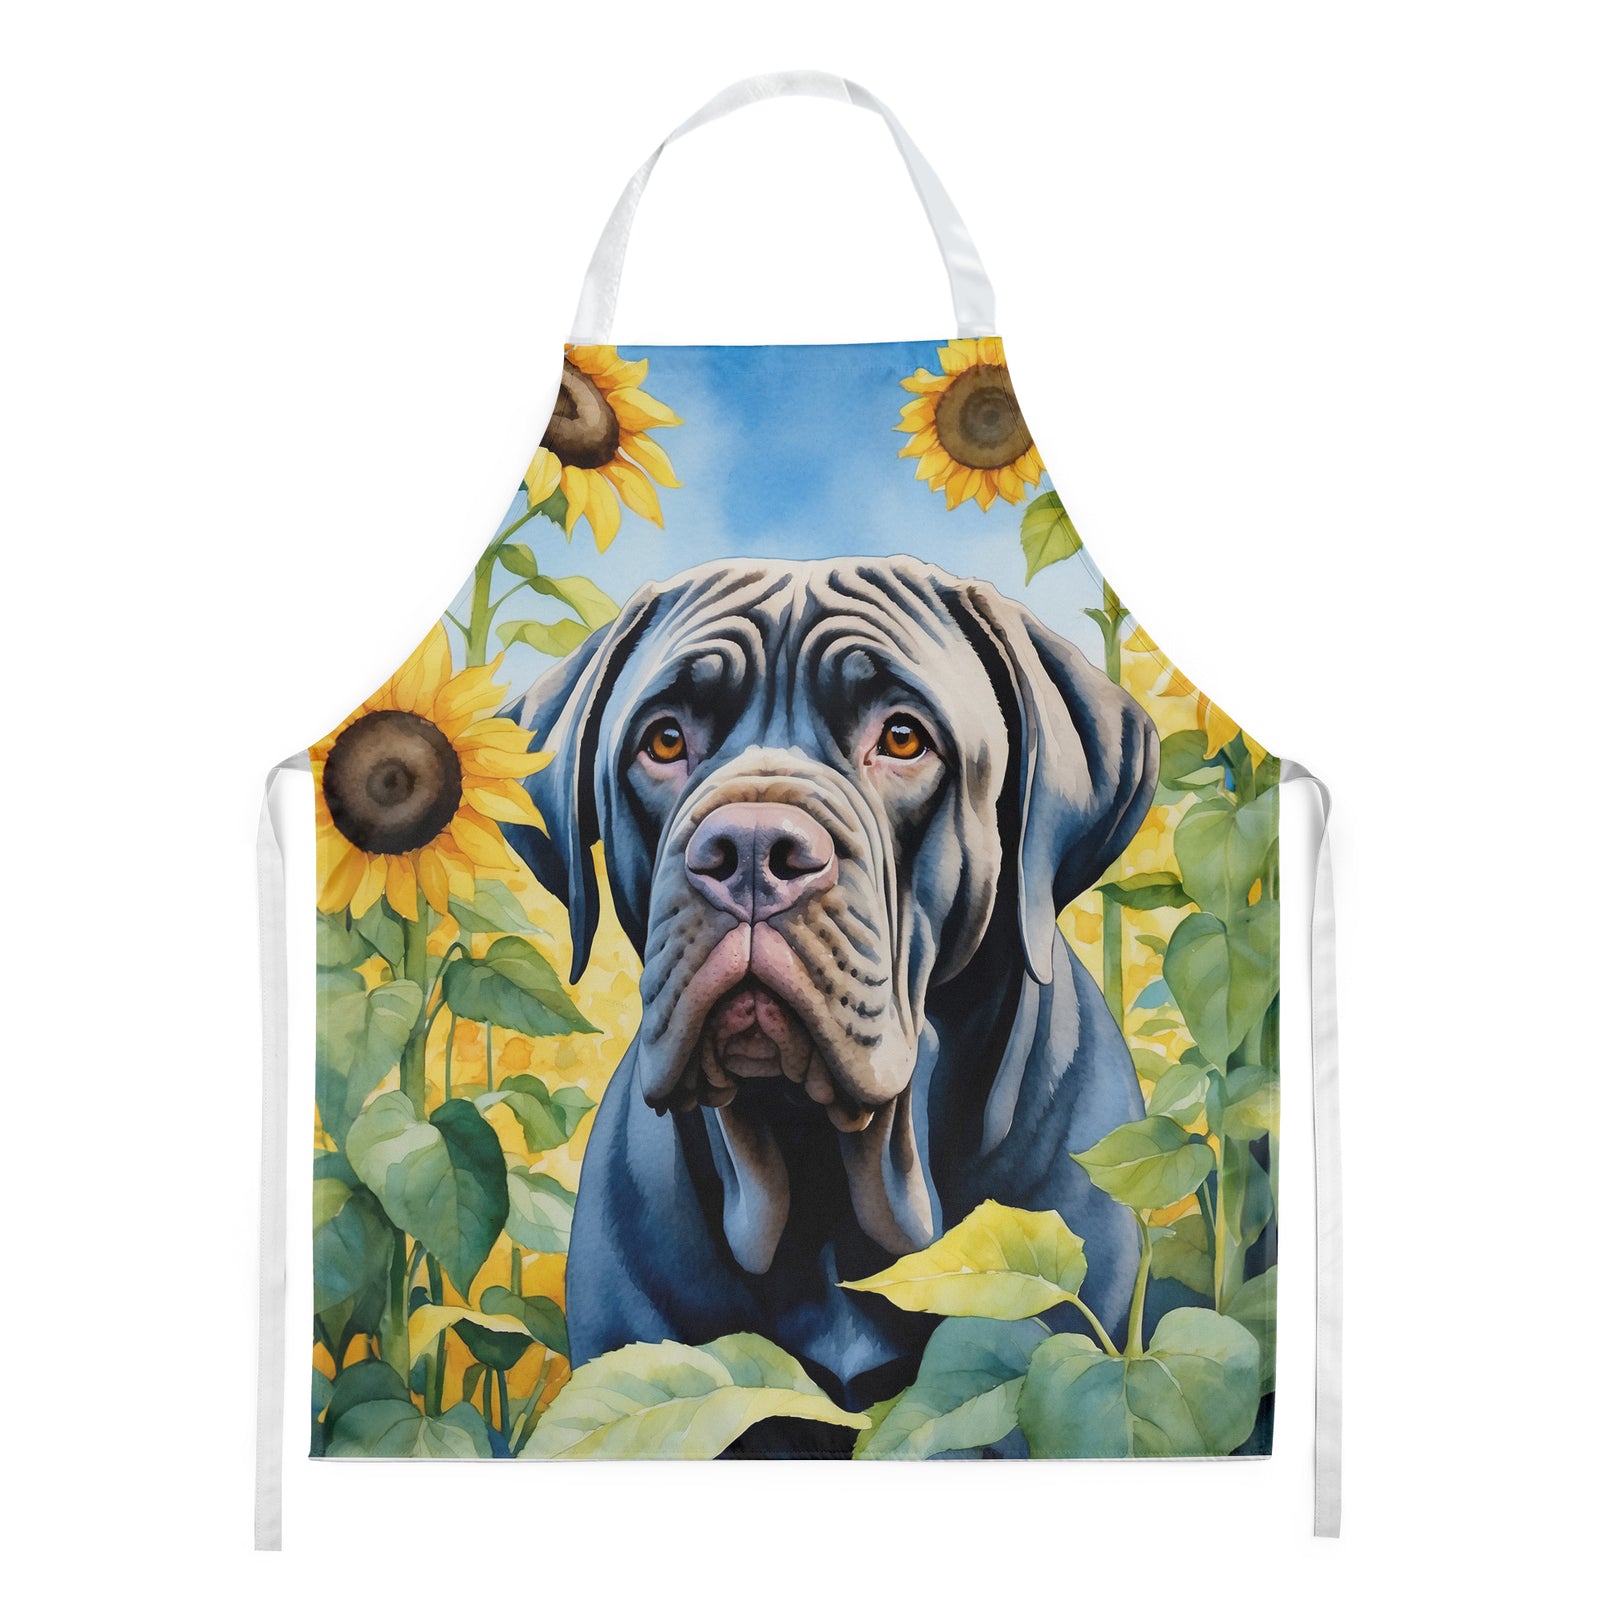 Buy this Neapolitan Mastiff in Sunflowers Apron